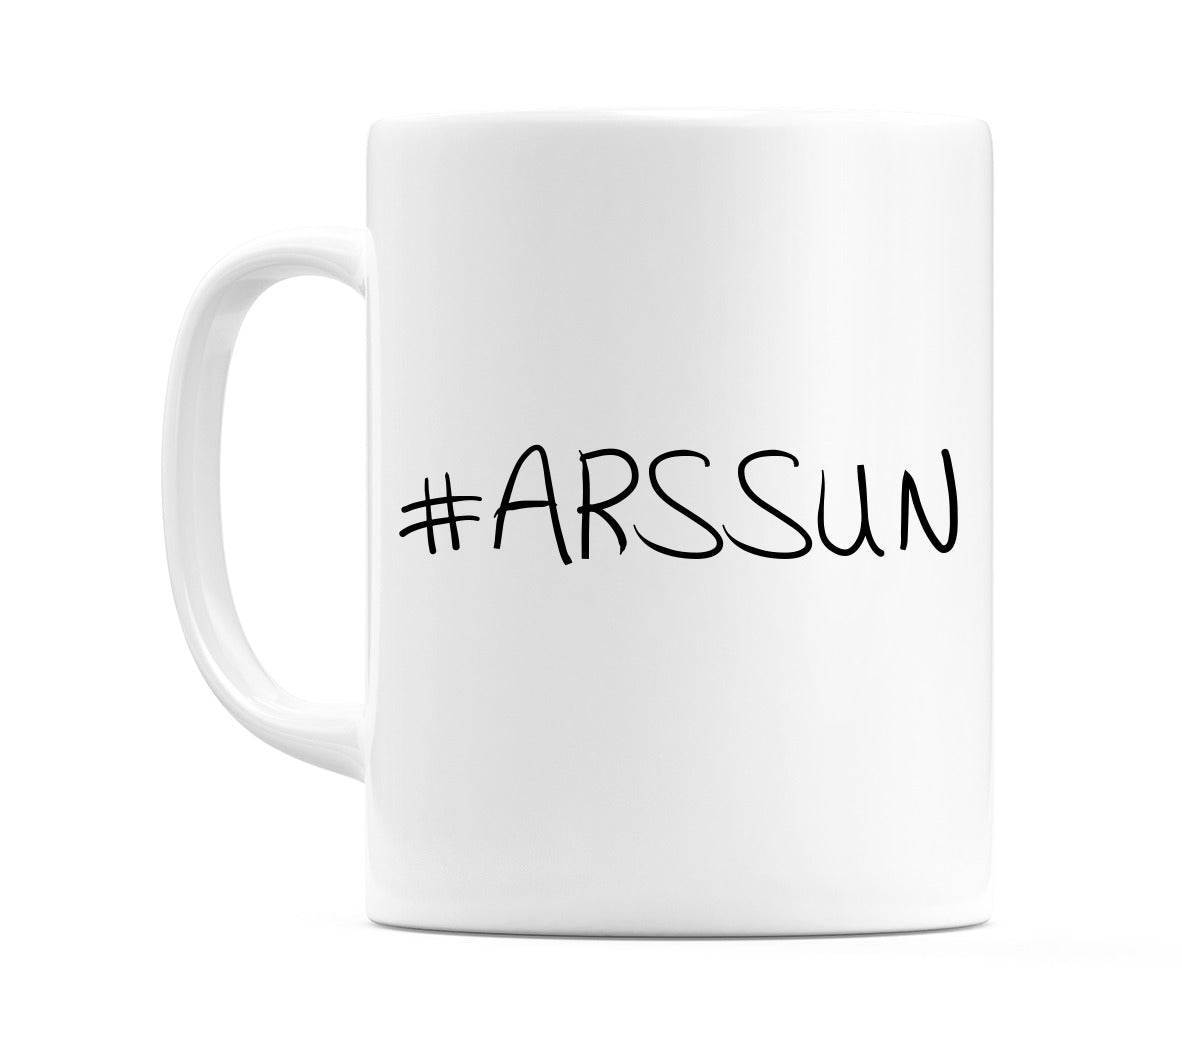 #ARSSUN Mug